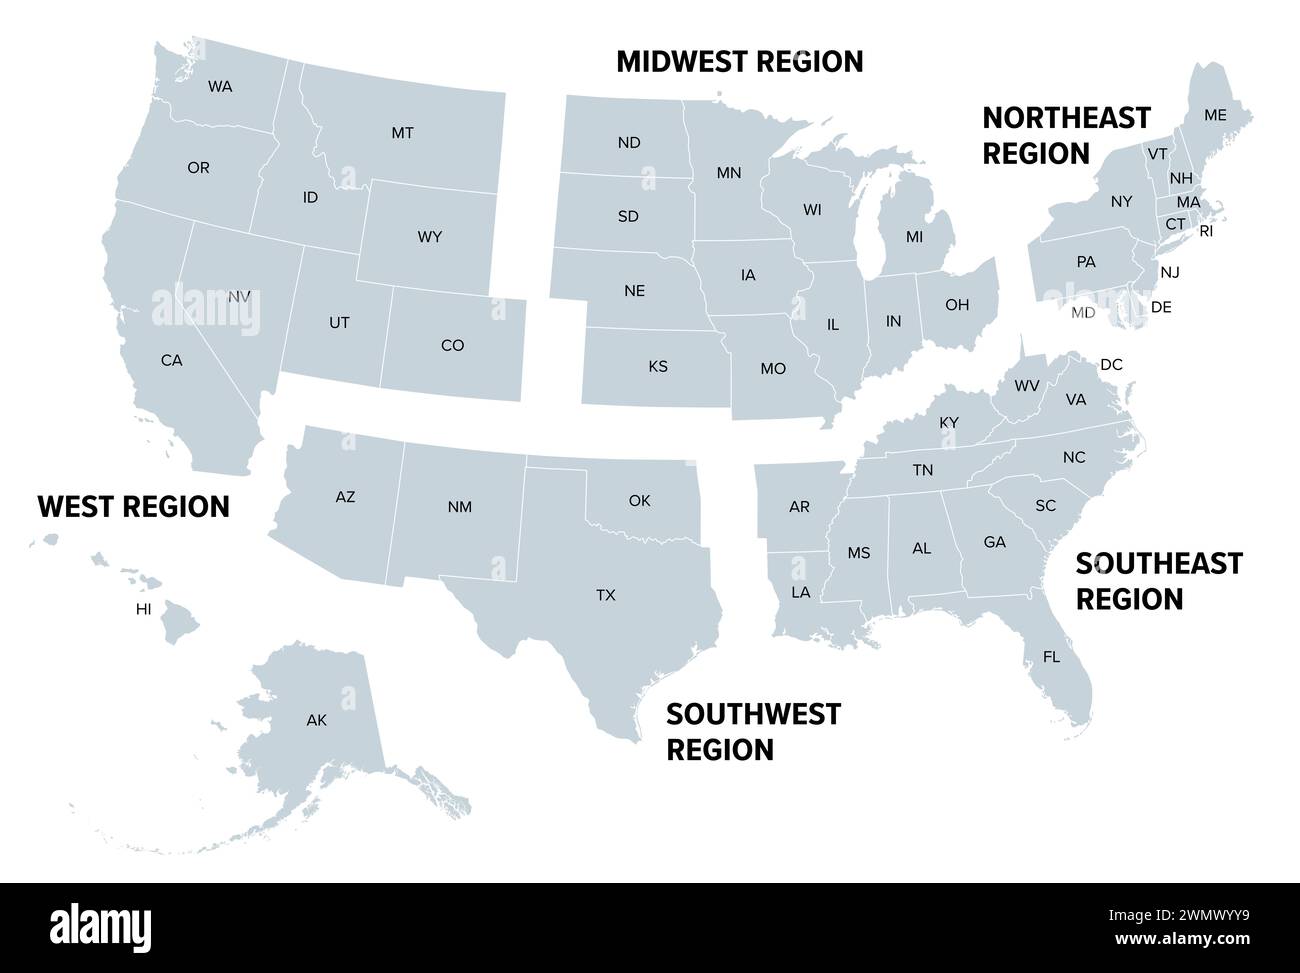 États-Unis, régions géographiques, carte politique grise. Cinq régions, selon leur position géographique sur le continent. Banque D'Images